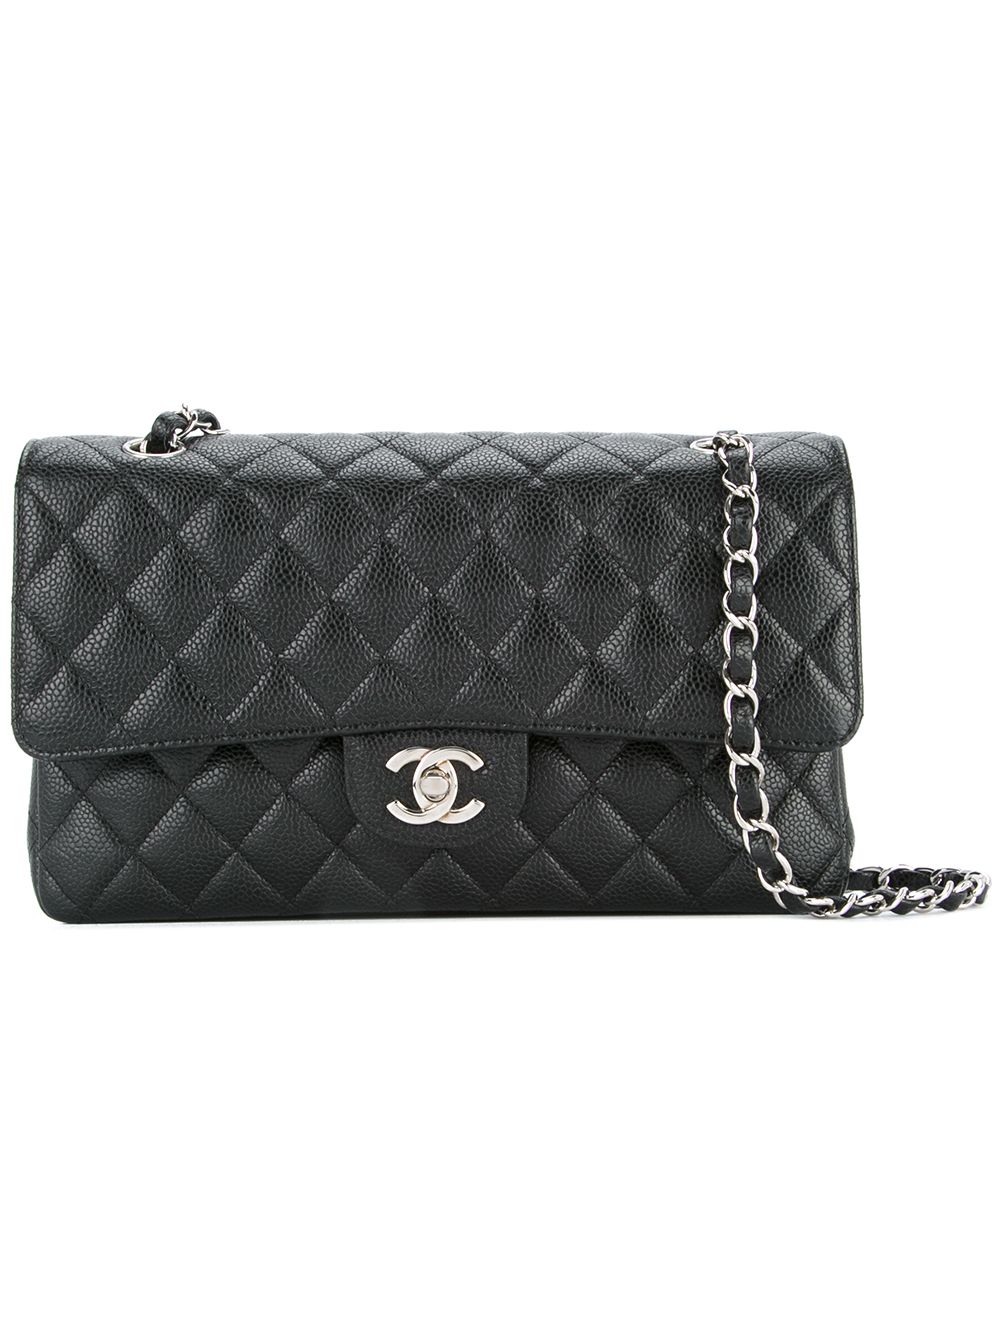 Sold at Auction: Chanel 2009 Resort Ocean Drive Single Flap Shoulder Bag